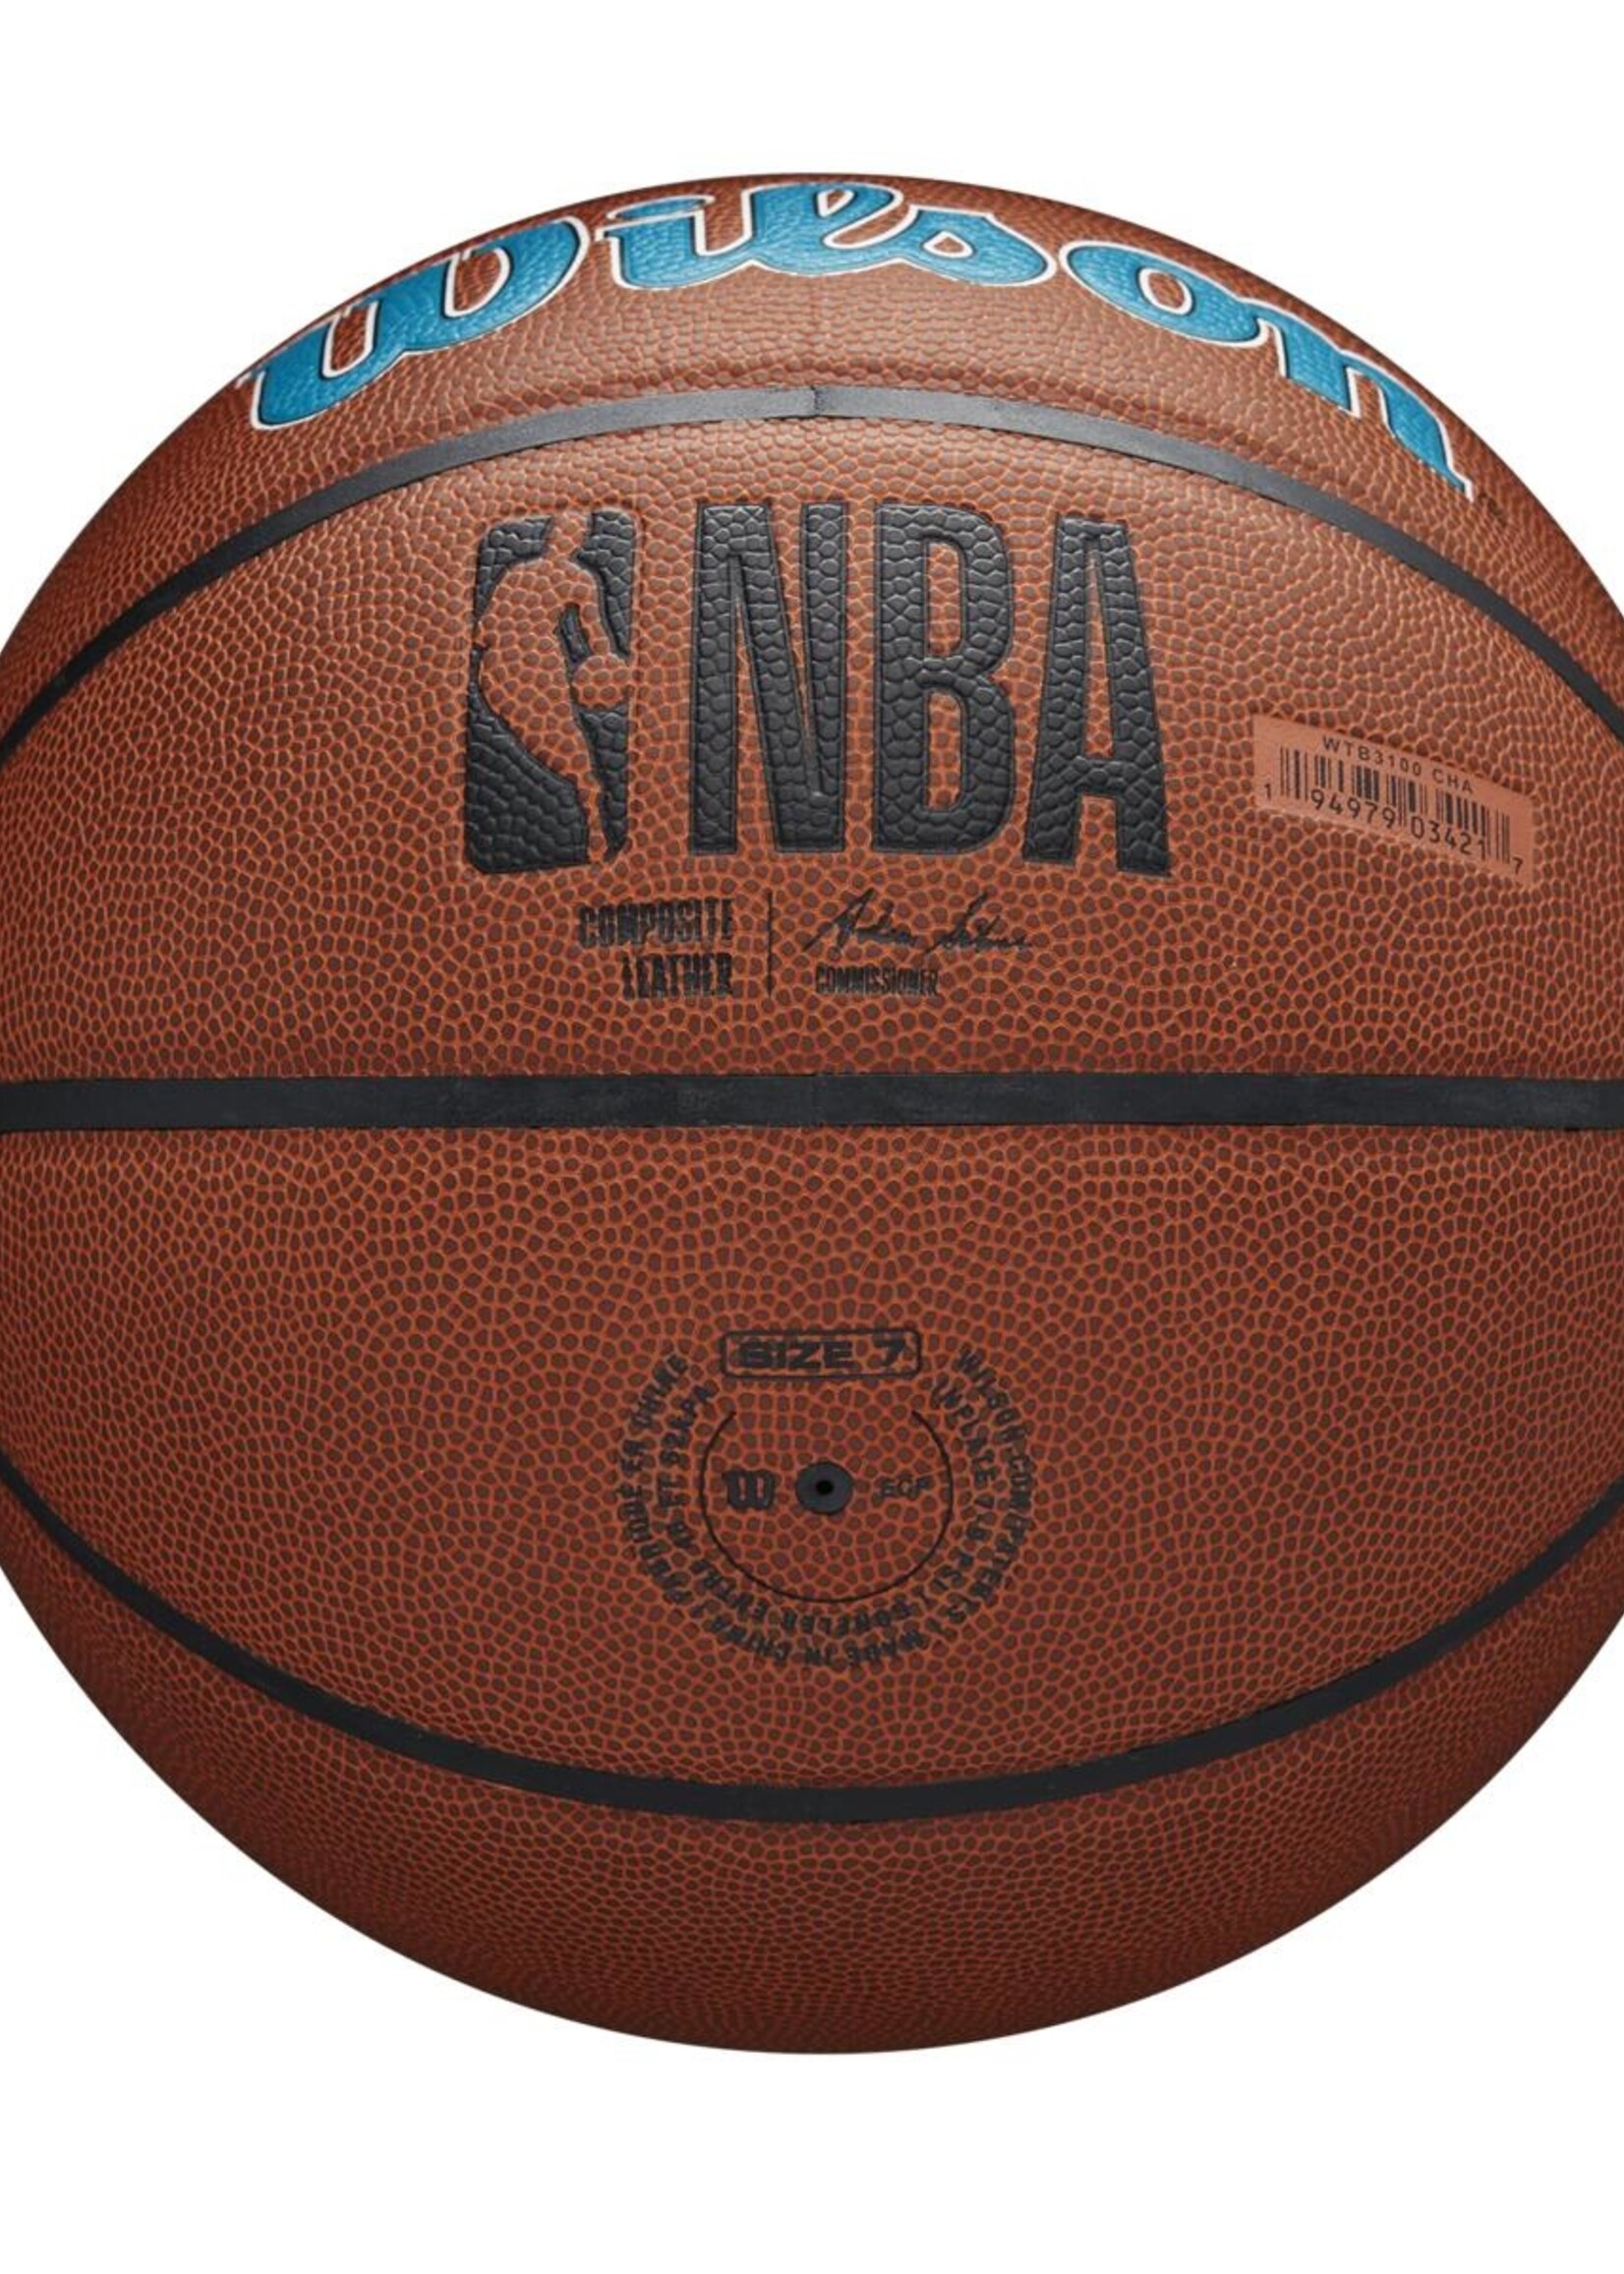 Wilson Wilson NBA CHARLOTTE HORNETS Composite Indoor / Outdoor Basketbal (7)